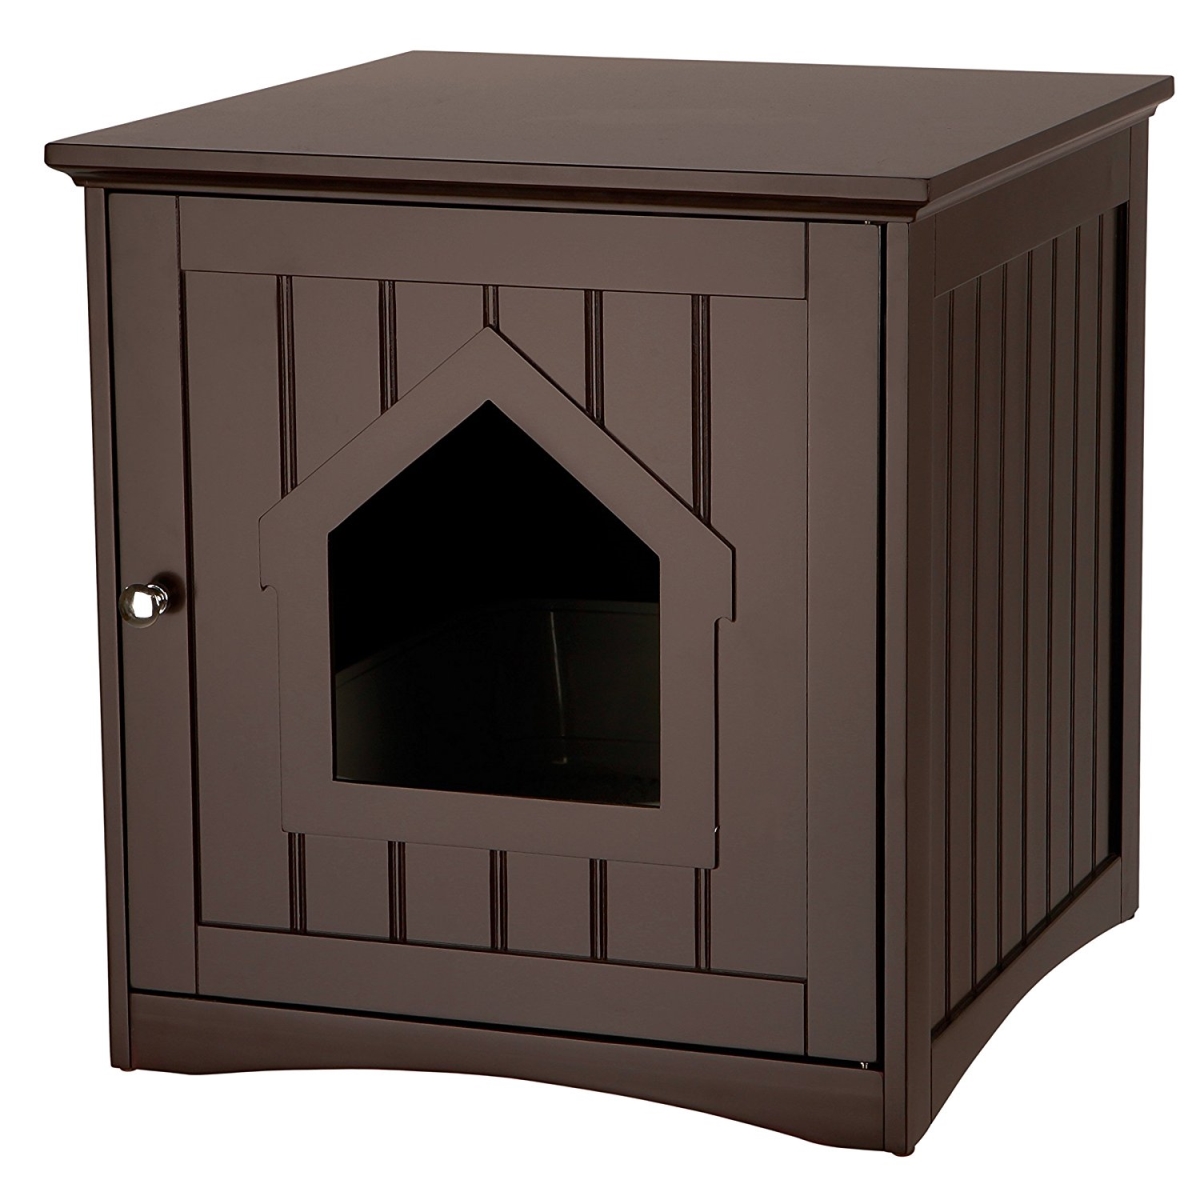 40292 Wooden Cat Home & Litter Box, Brown